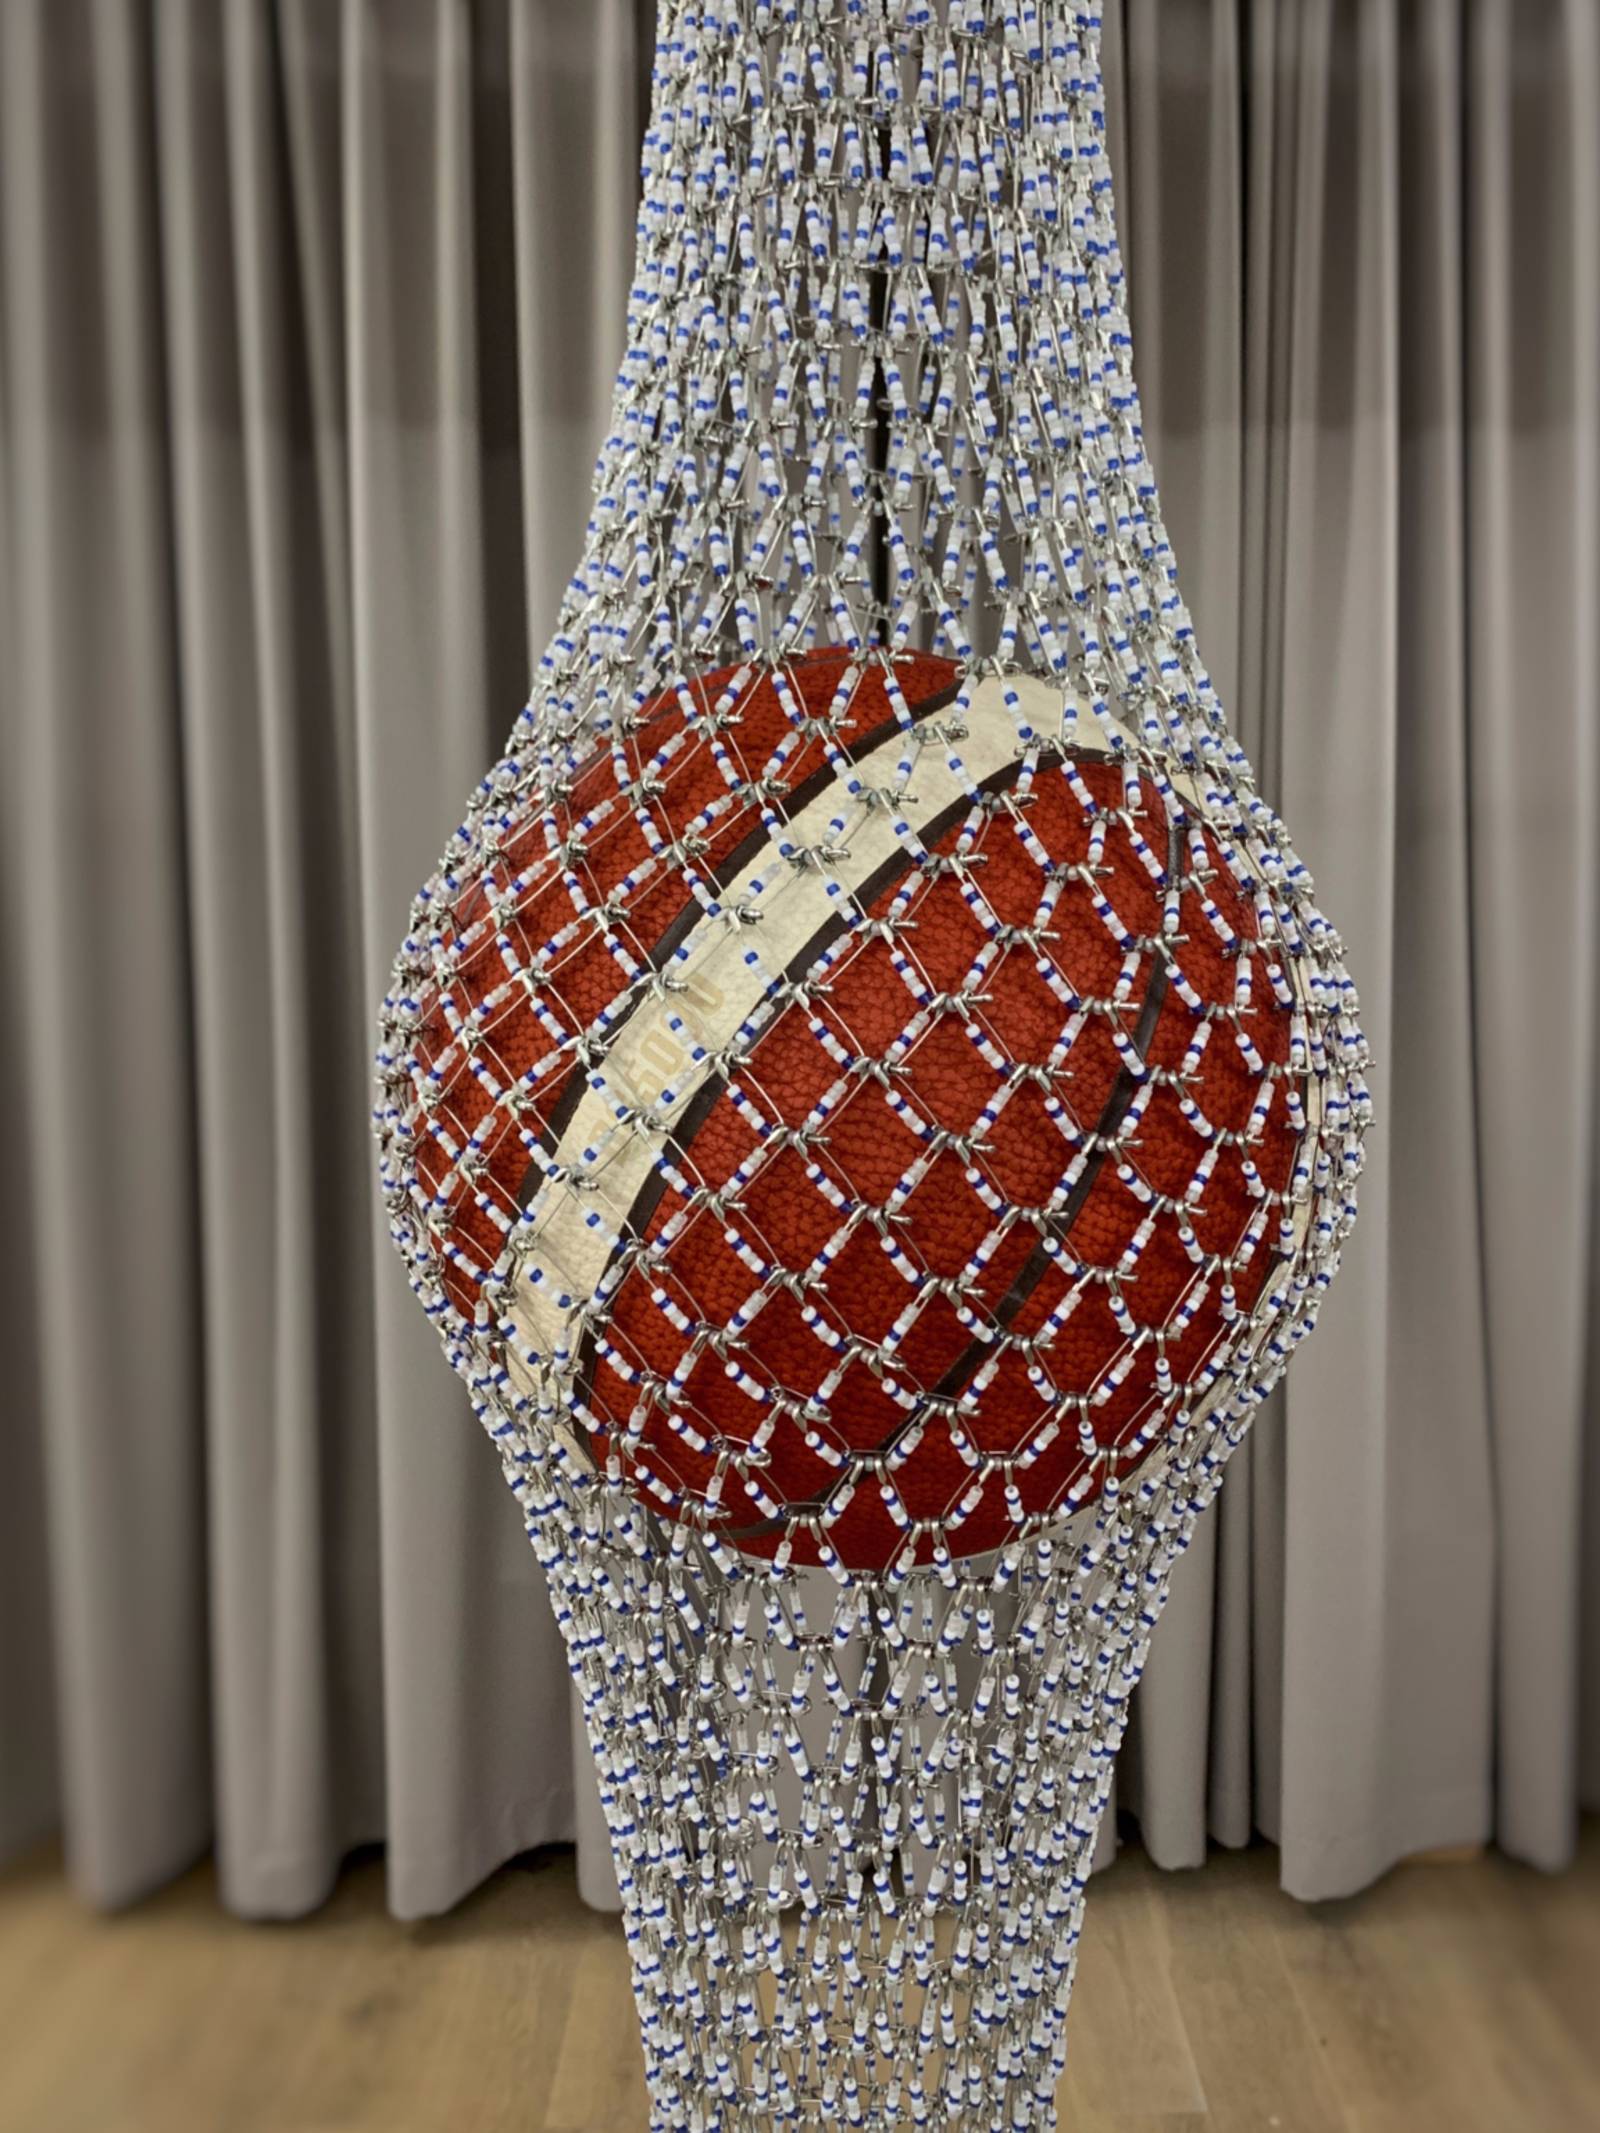 Blick auf ein Kunstwerk von Shige Fujishiro: Ein Basketball wird von einem dünnen Netz gehalten, auf den Fäden des Netzes sind Ziersteine. Im Hintergrund ist ein Vorhang.